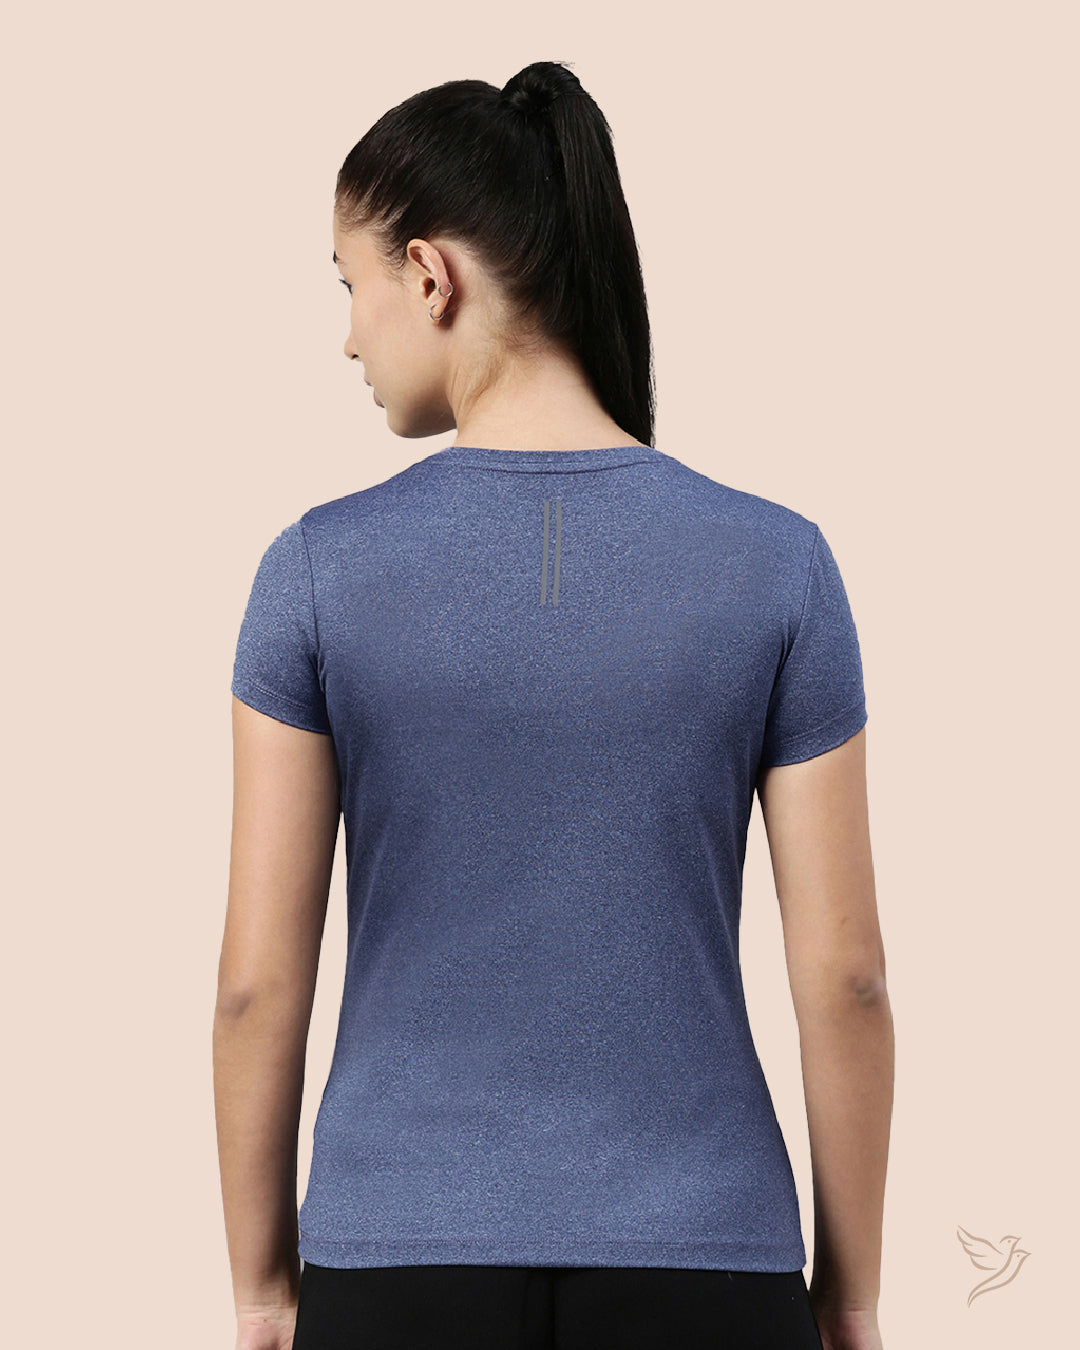 Stylish Blue Melange Active T - Shirt   